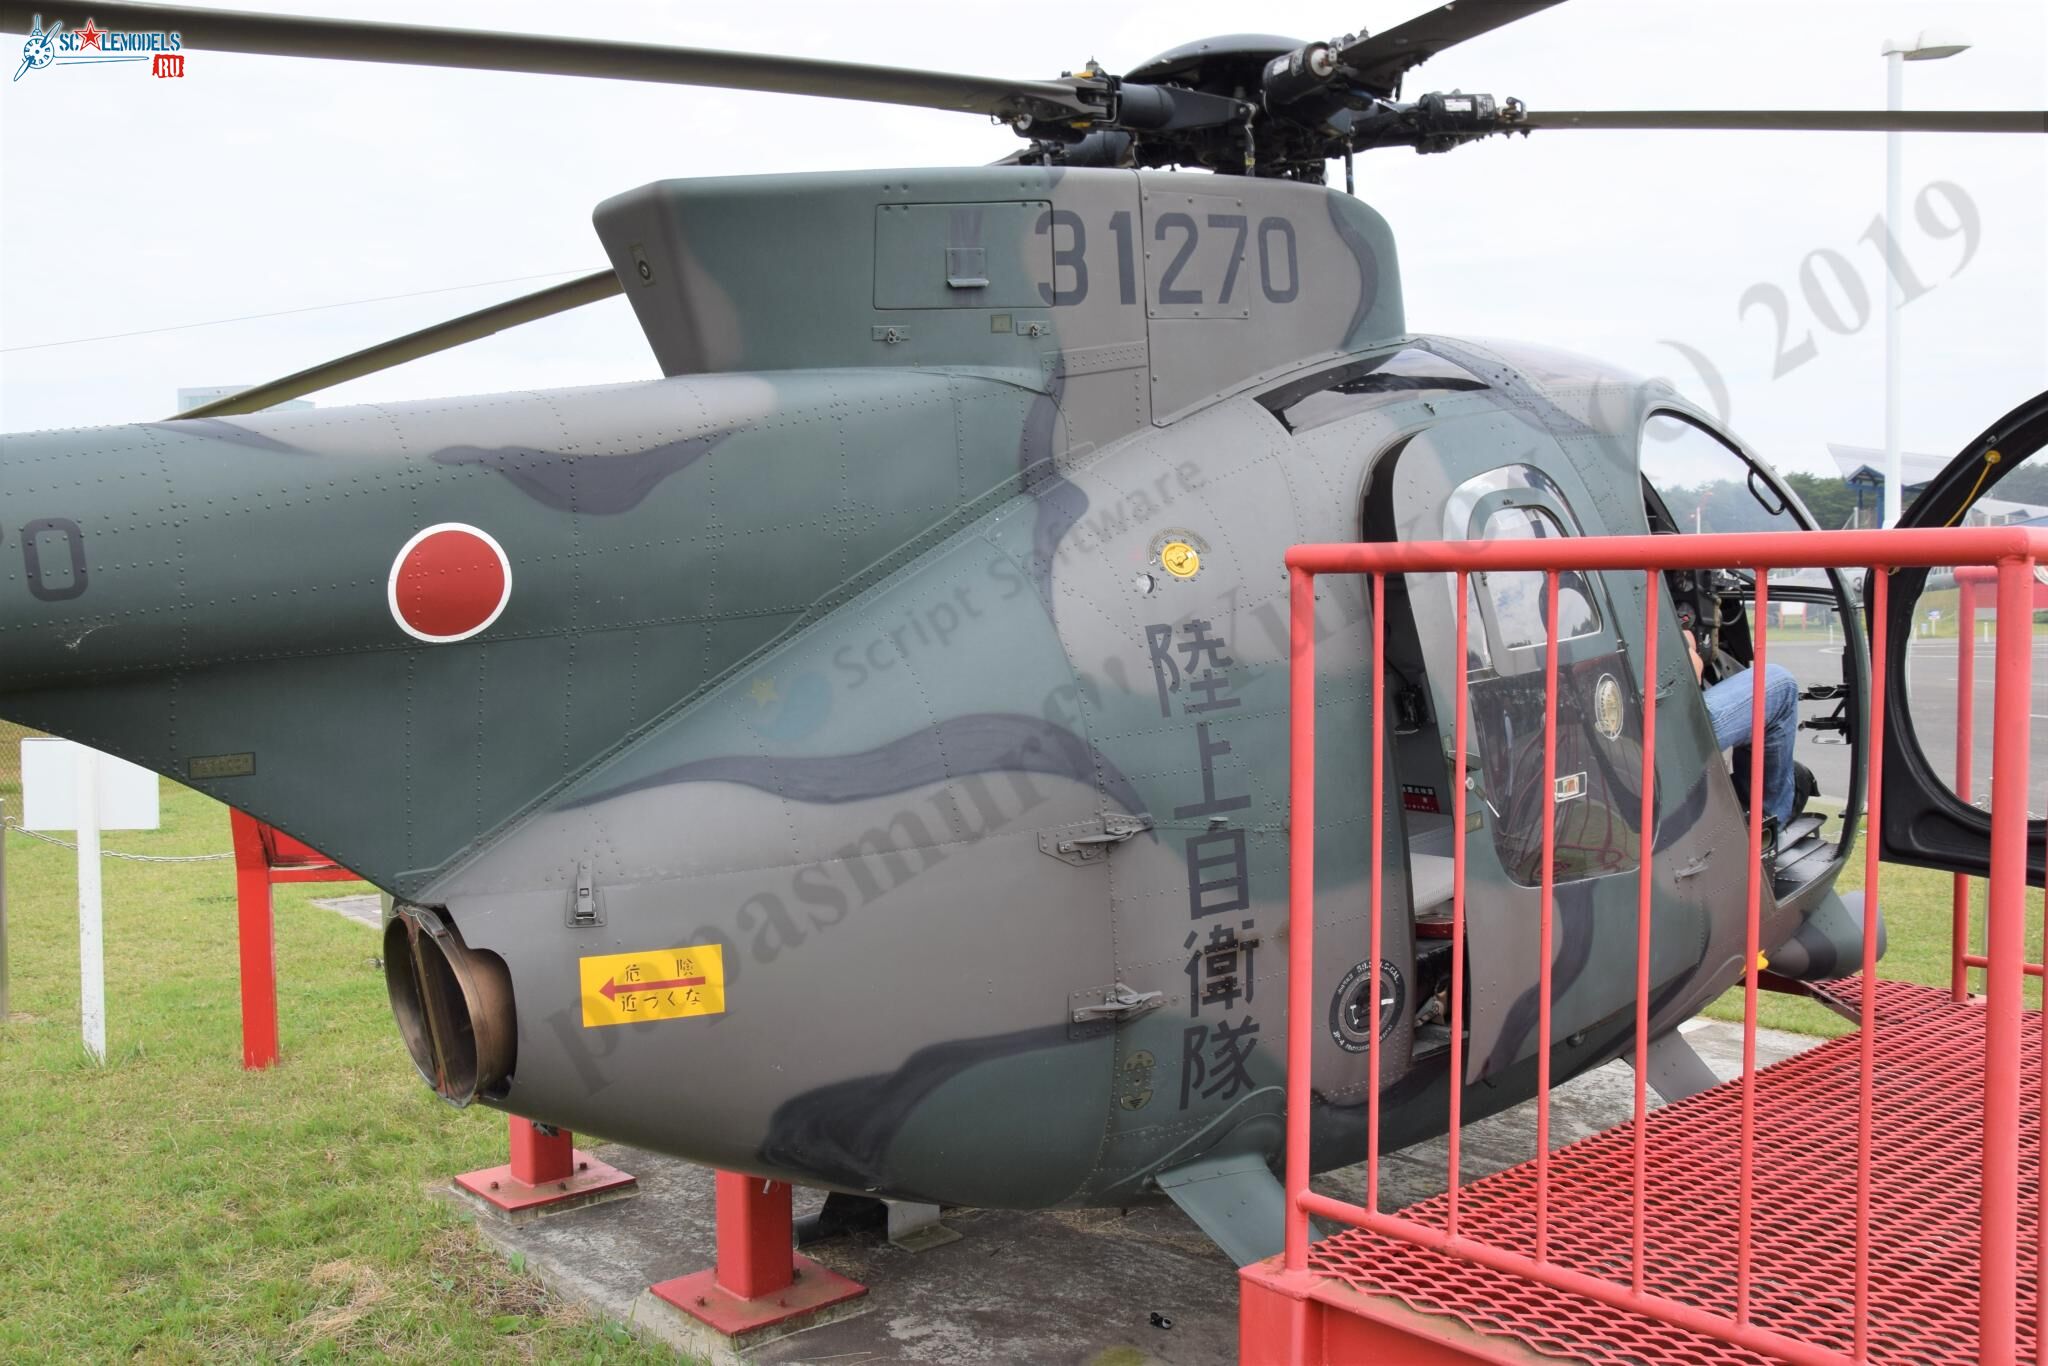 OH-6D_JD-1270_Misawa_47.jpg